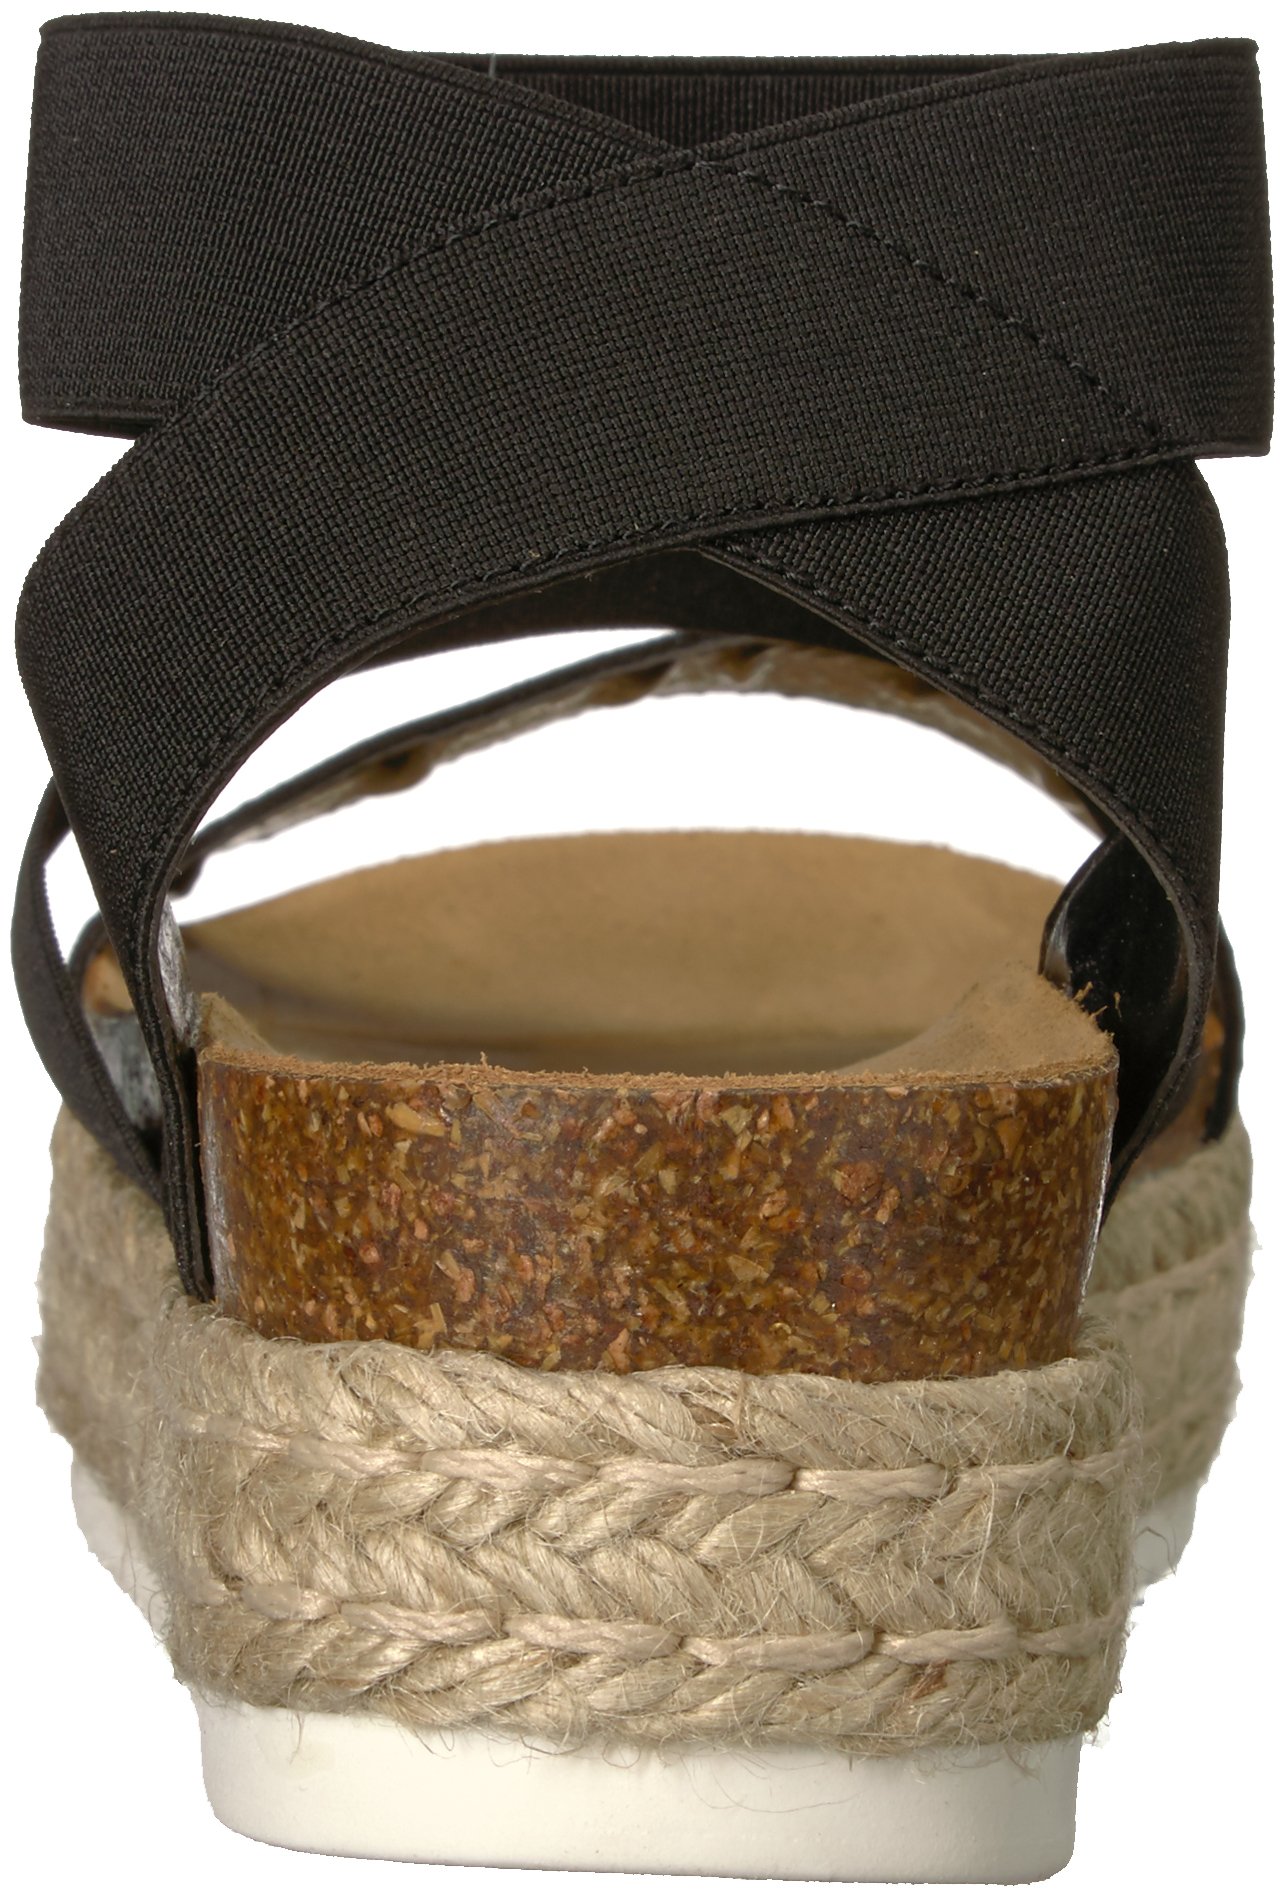 Steve Madden Women's Kimmie Wedge Sandal, Black, 9 M US